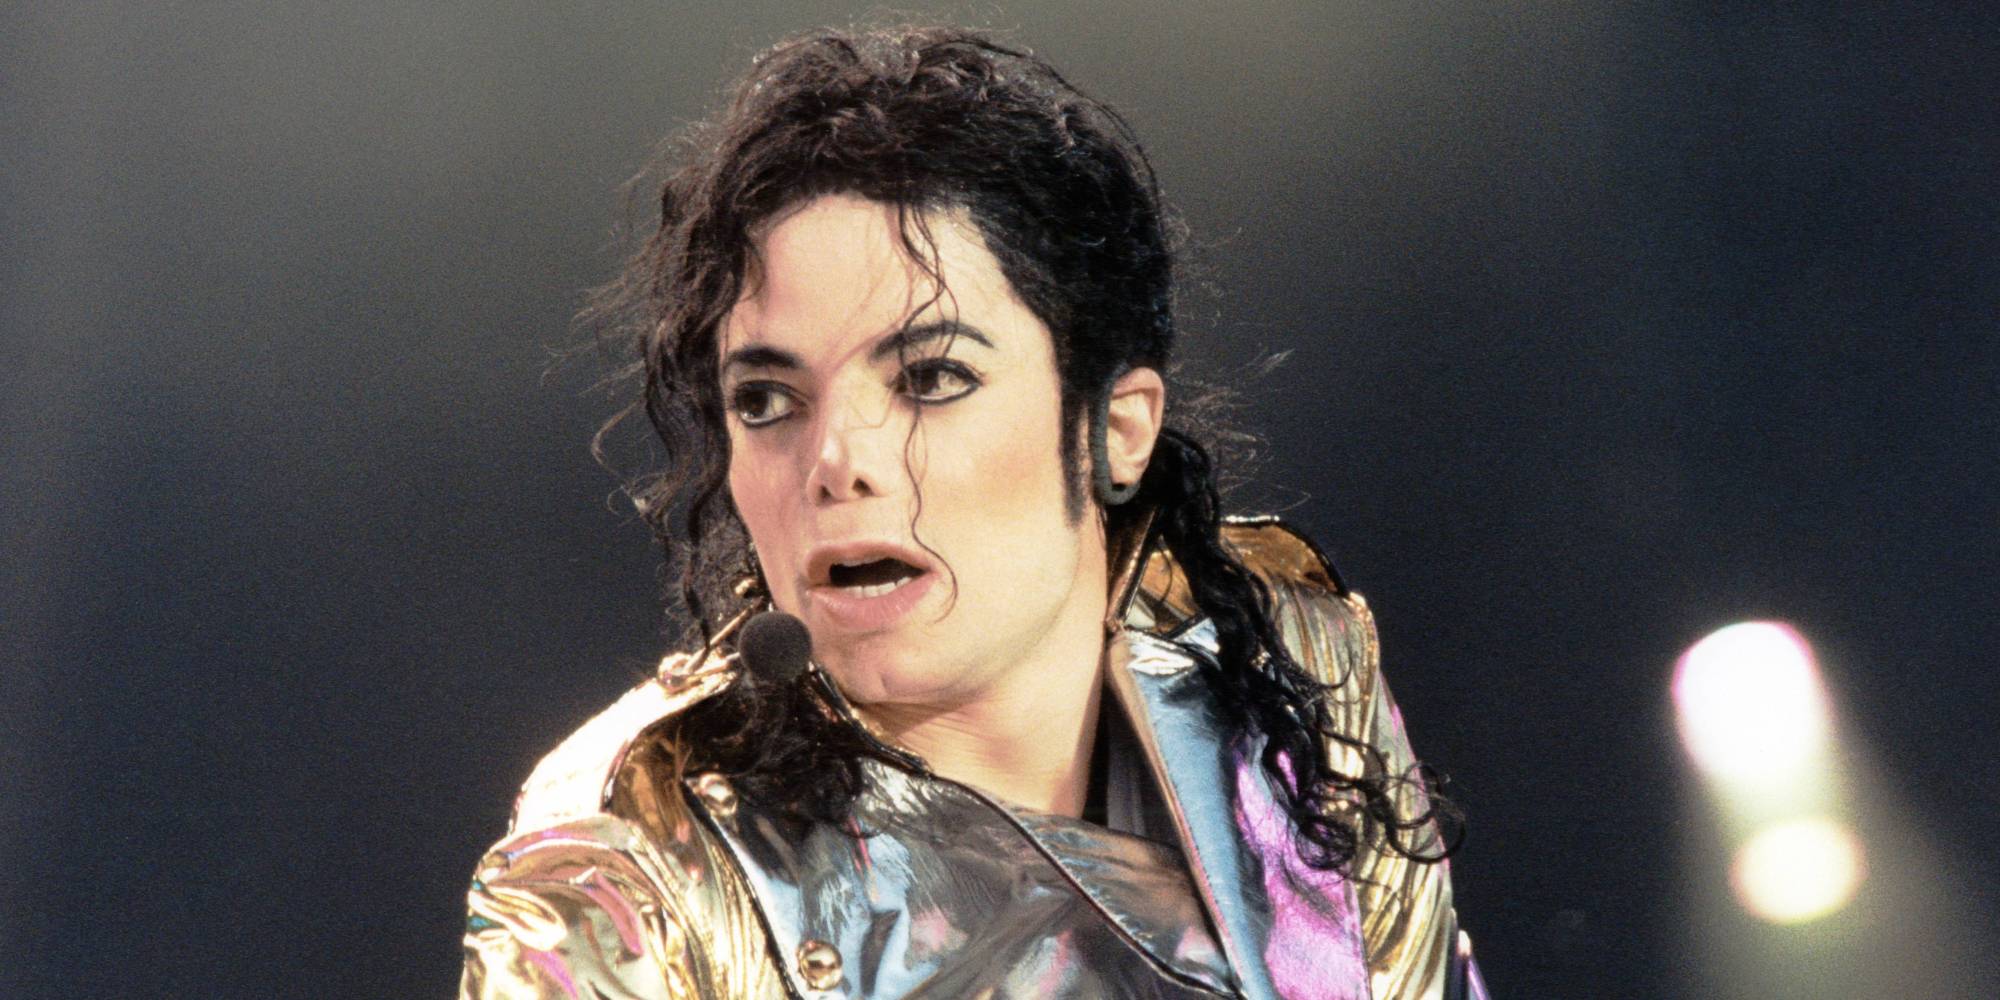 Vídeo inédito de 1996 mostra Michael Jackson a ser interrogado sobre abusos sexuais de menores